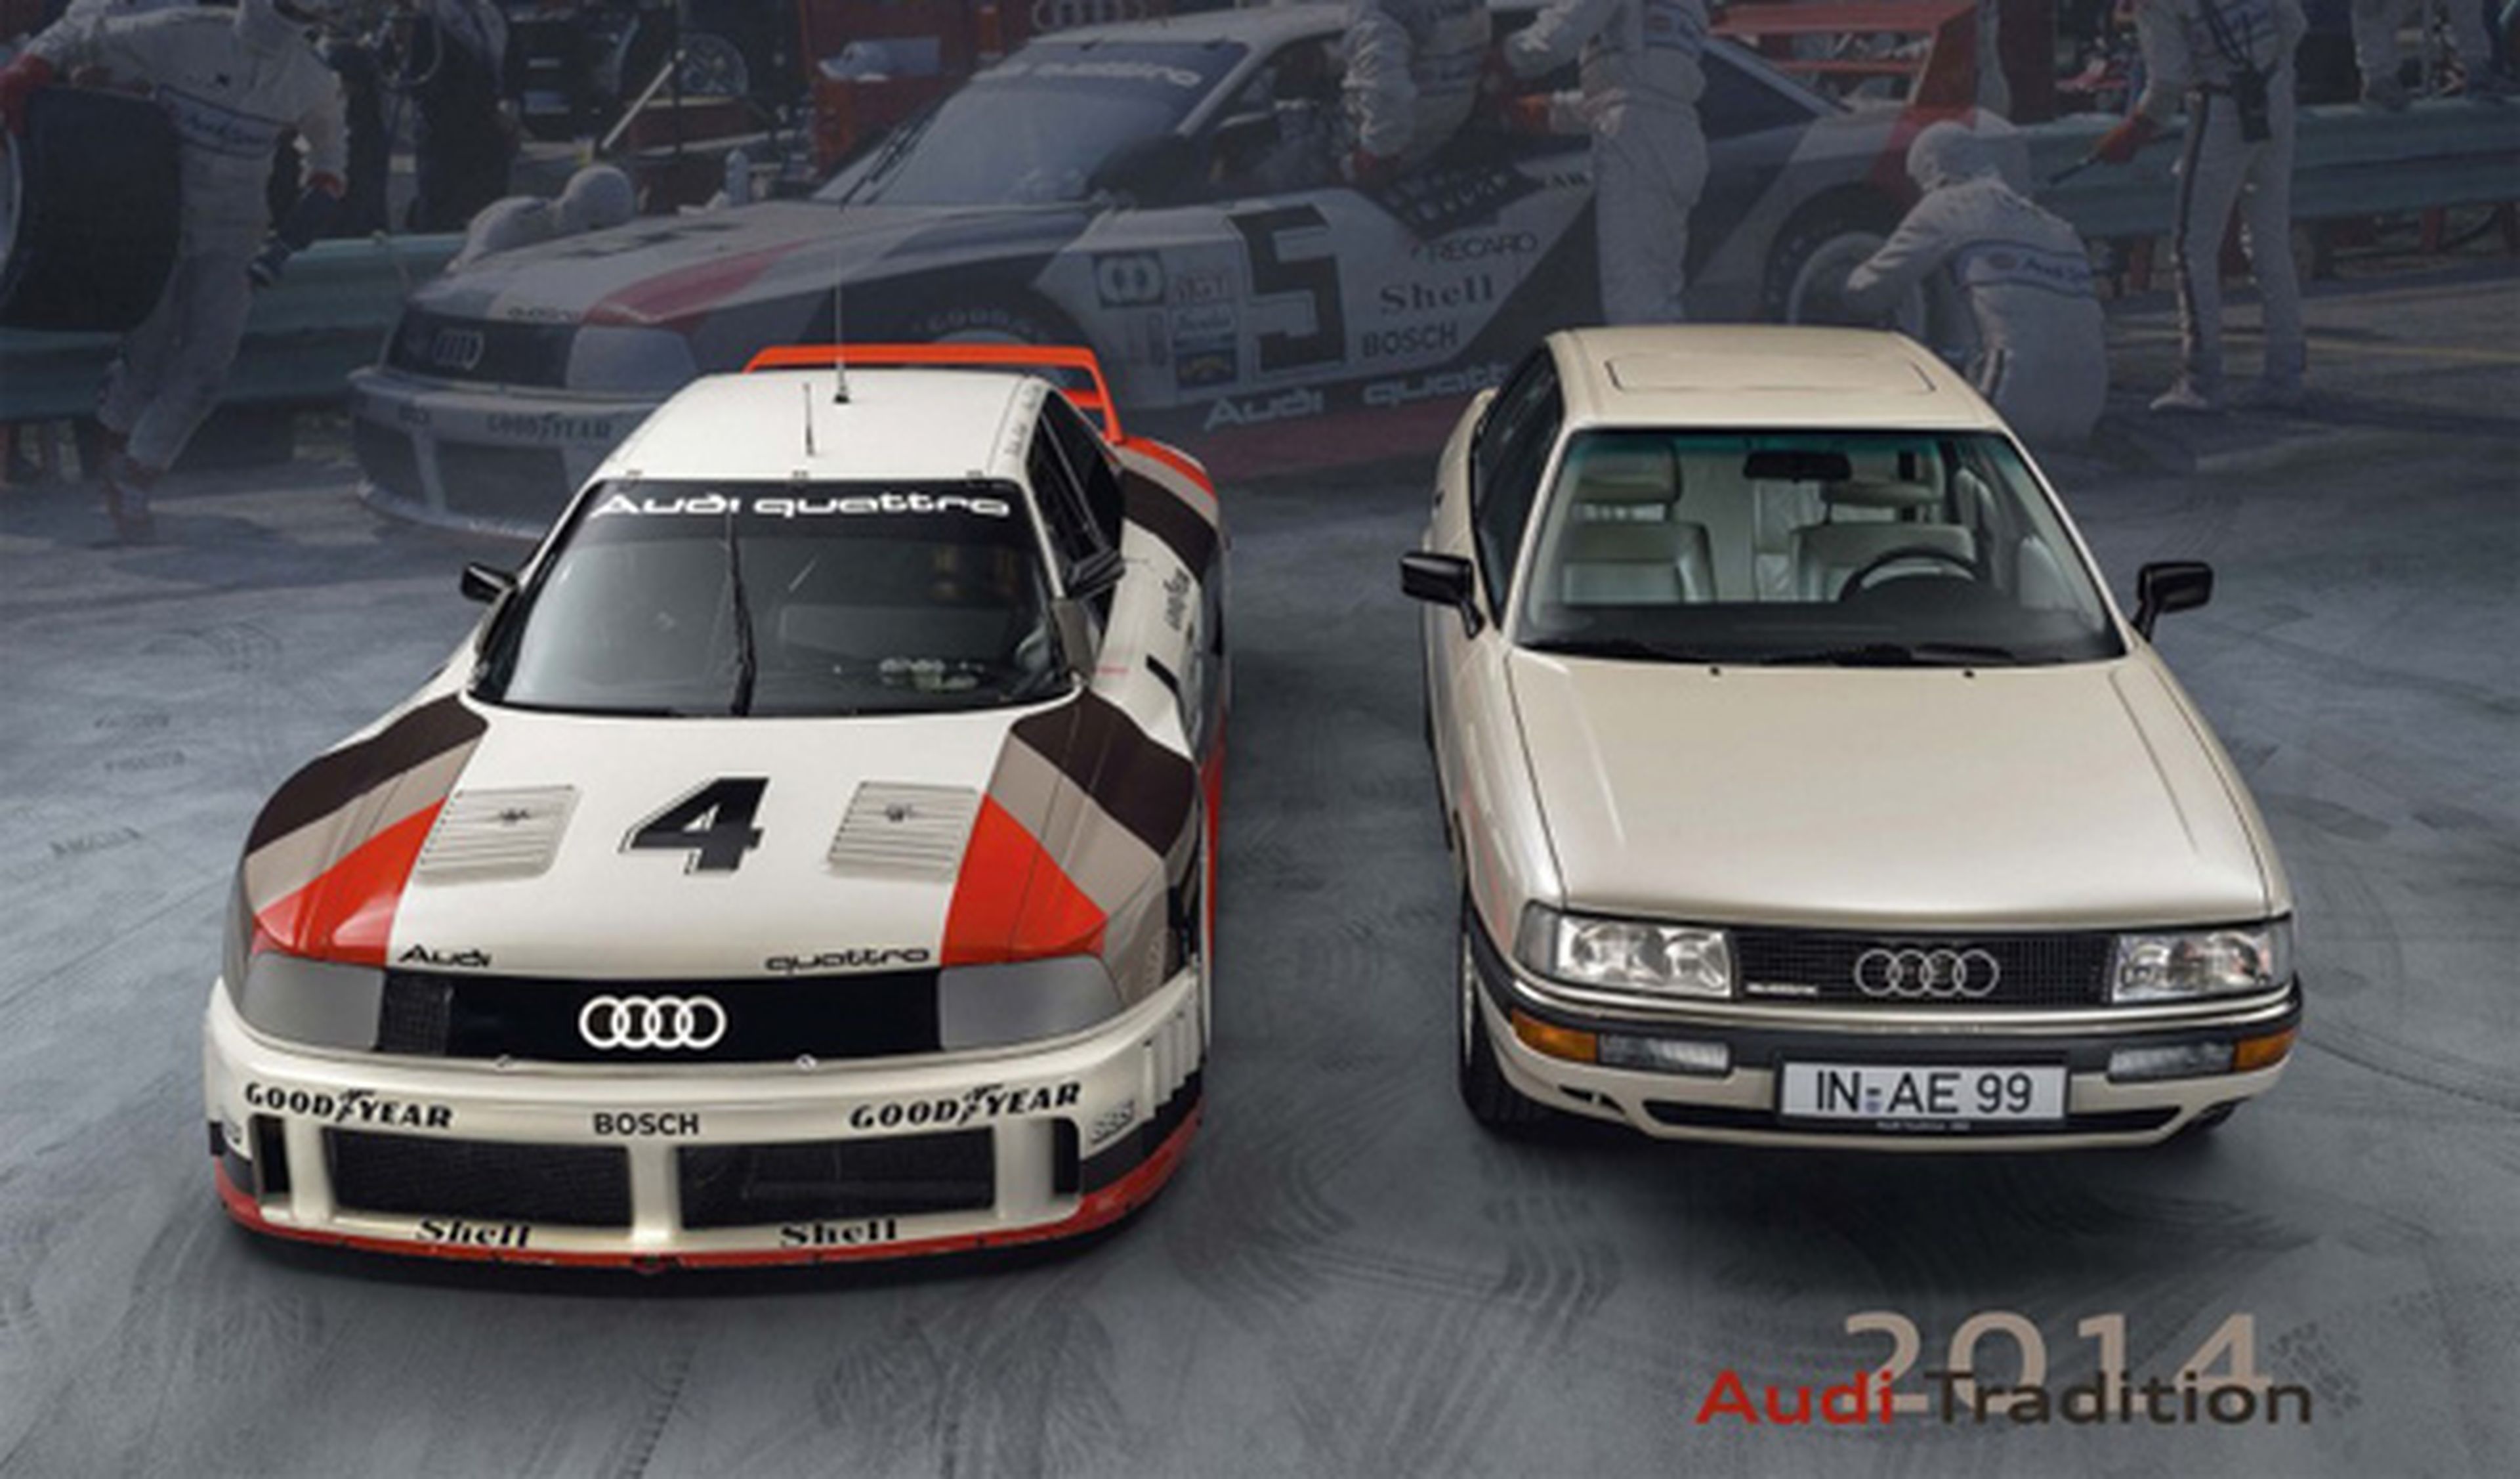 RaceSeries, el calendario para fanáticos de Audi